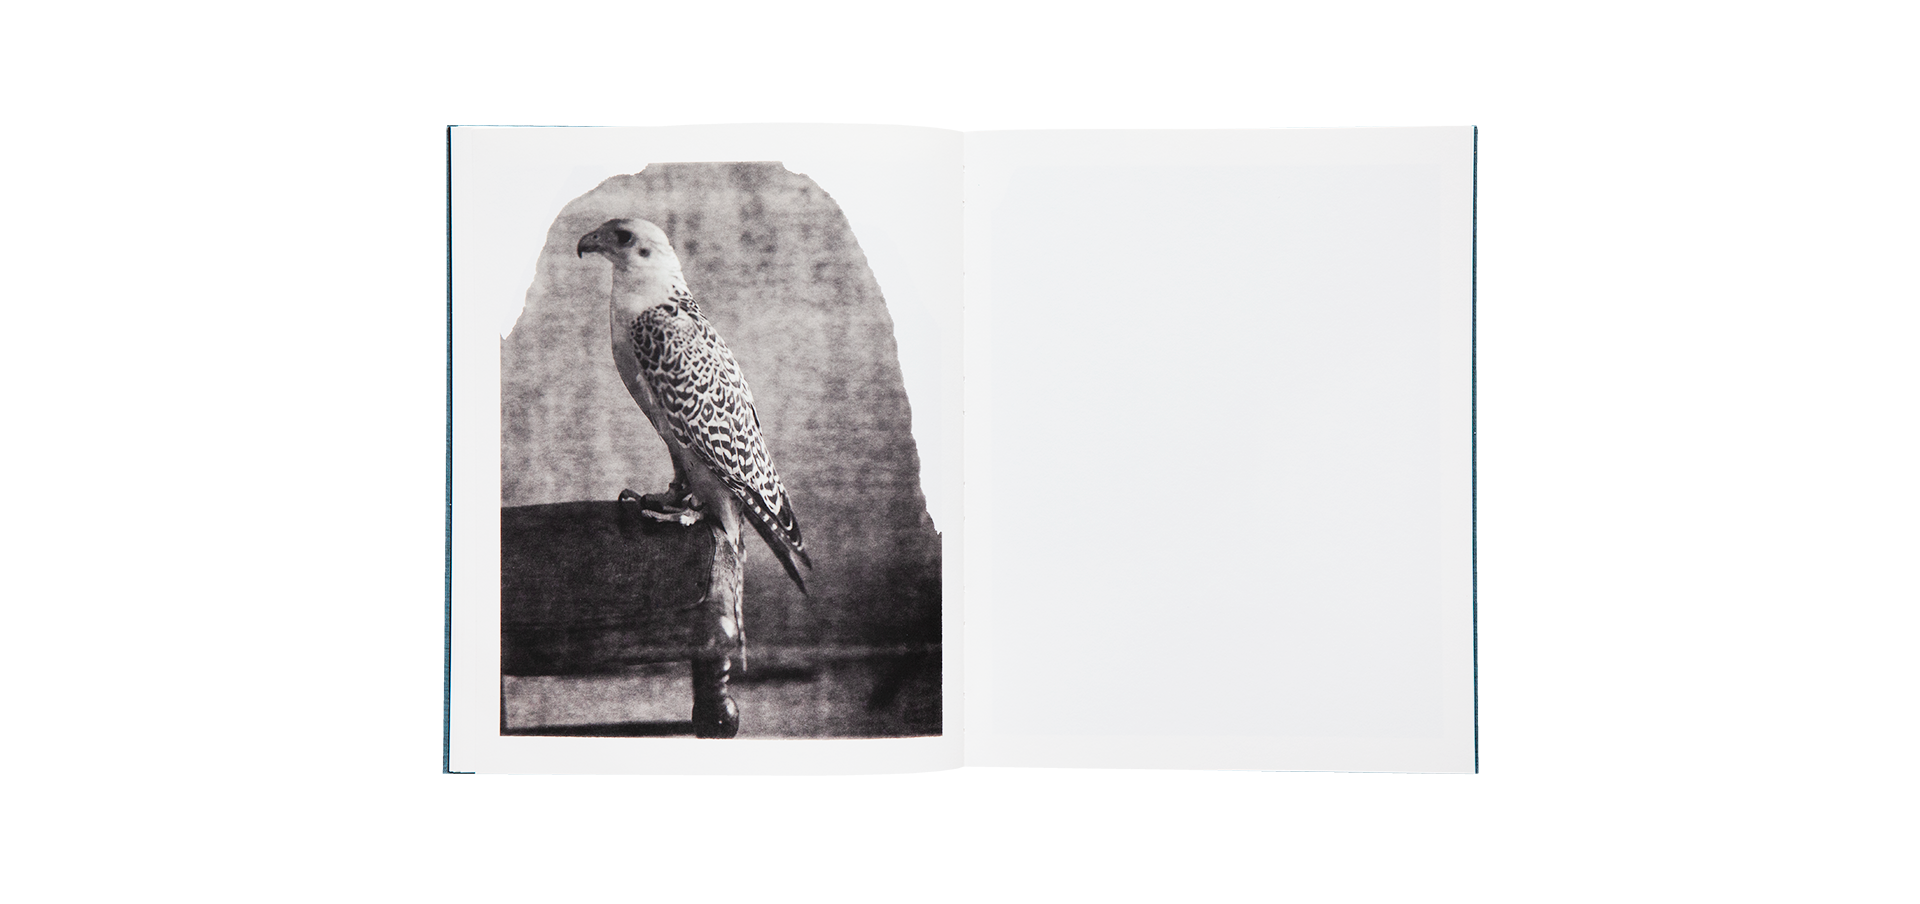 Des oiseaux (On birds) - Paolo Roversi